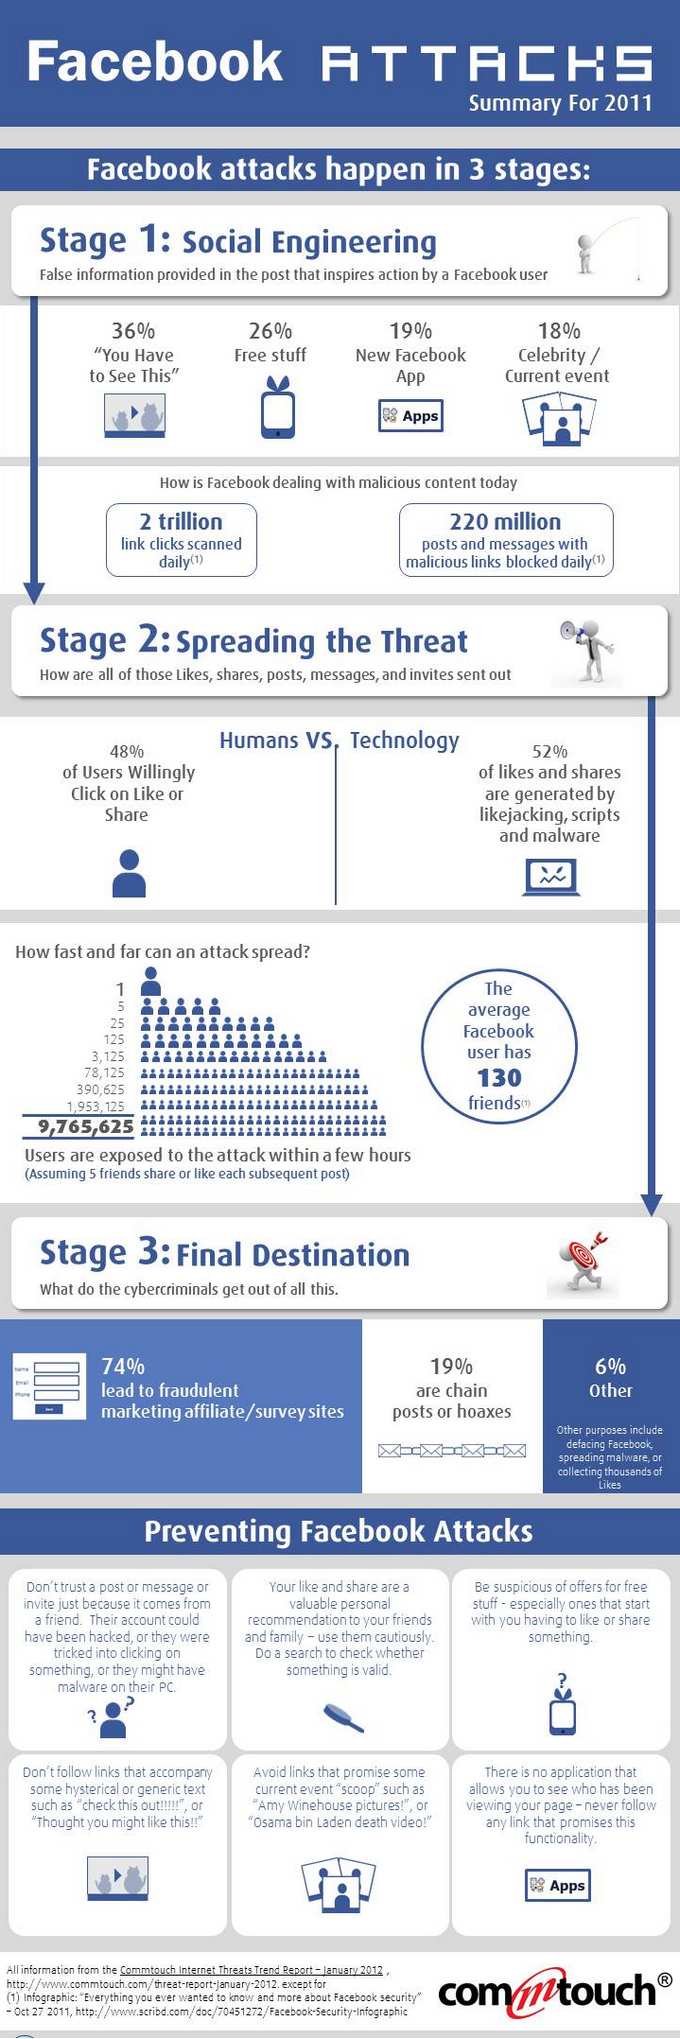 Facebook Attack, cómo suceden los fraudes en Facebook y cómo prevenirlos #Infografía 1